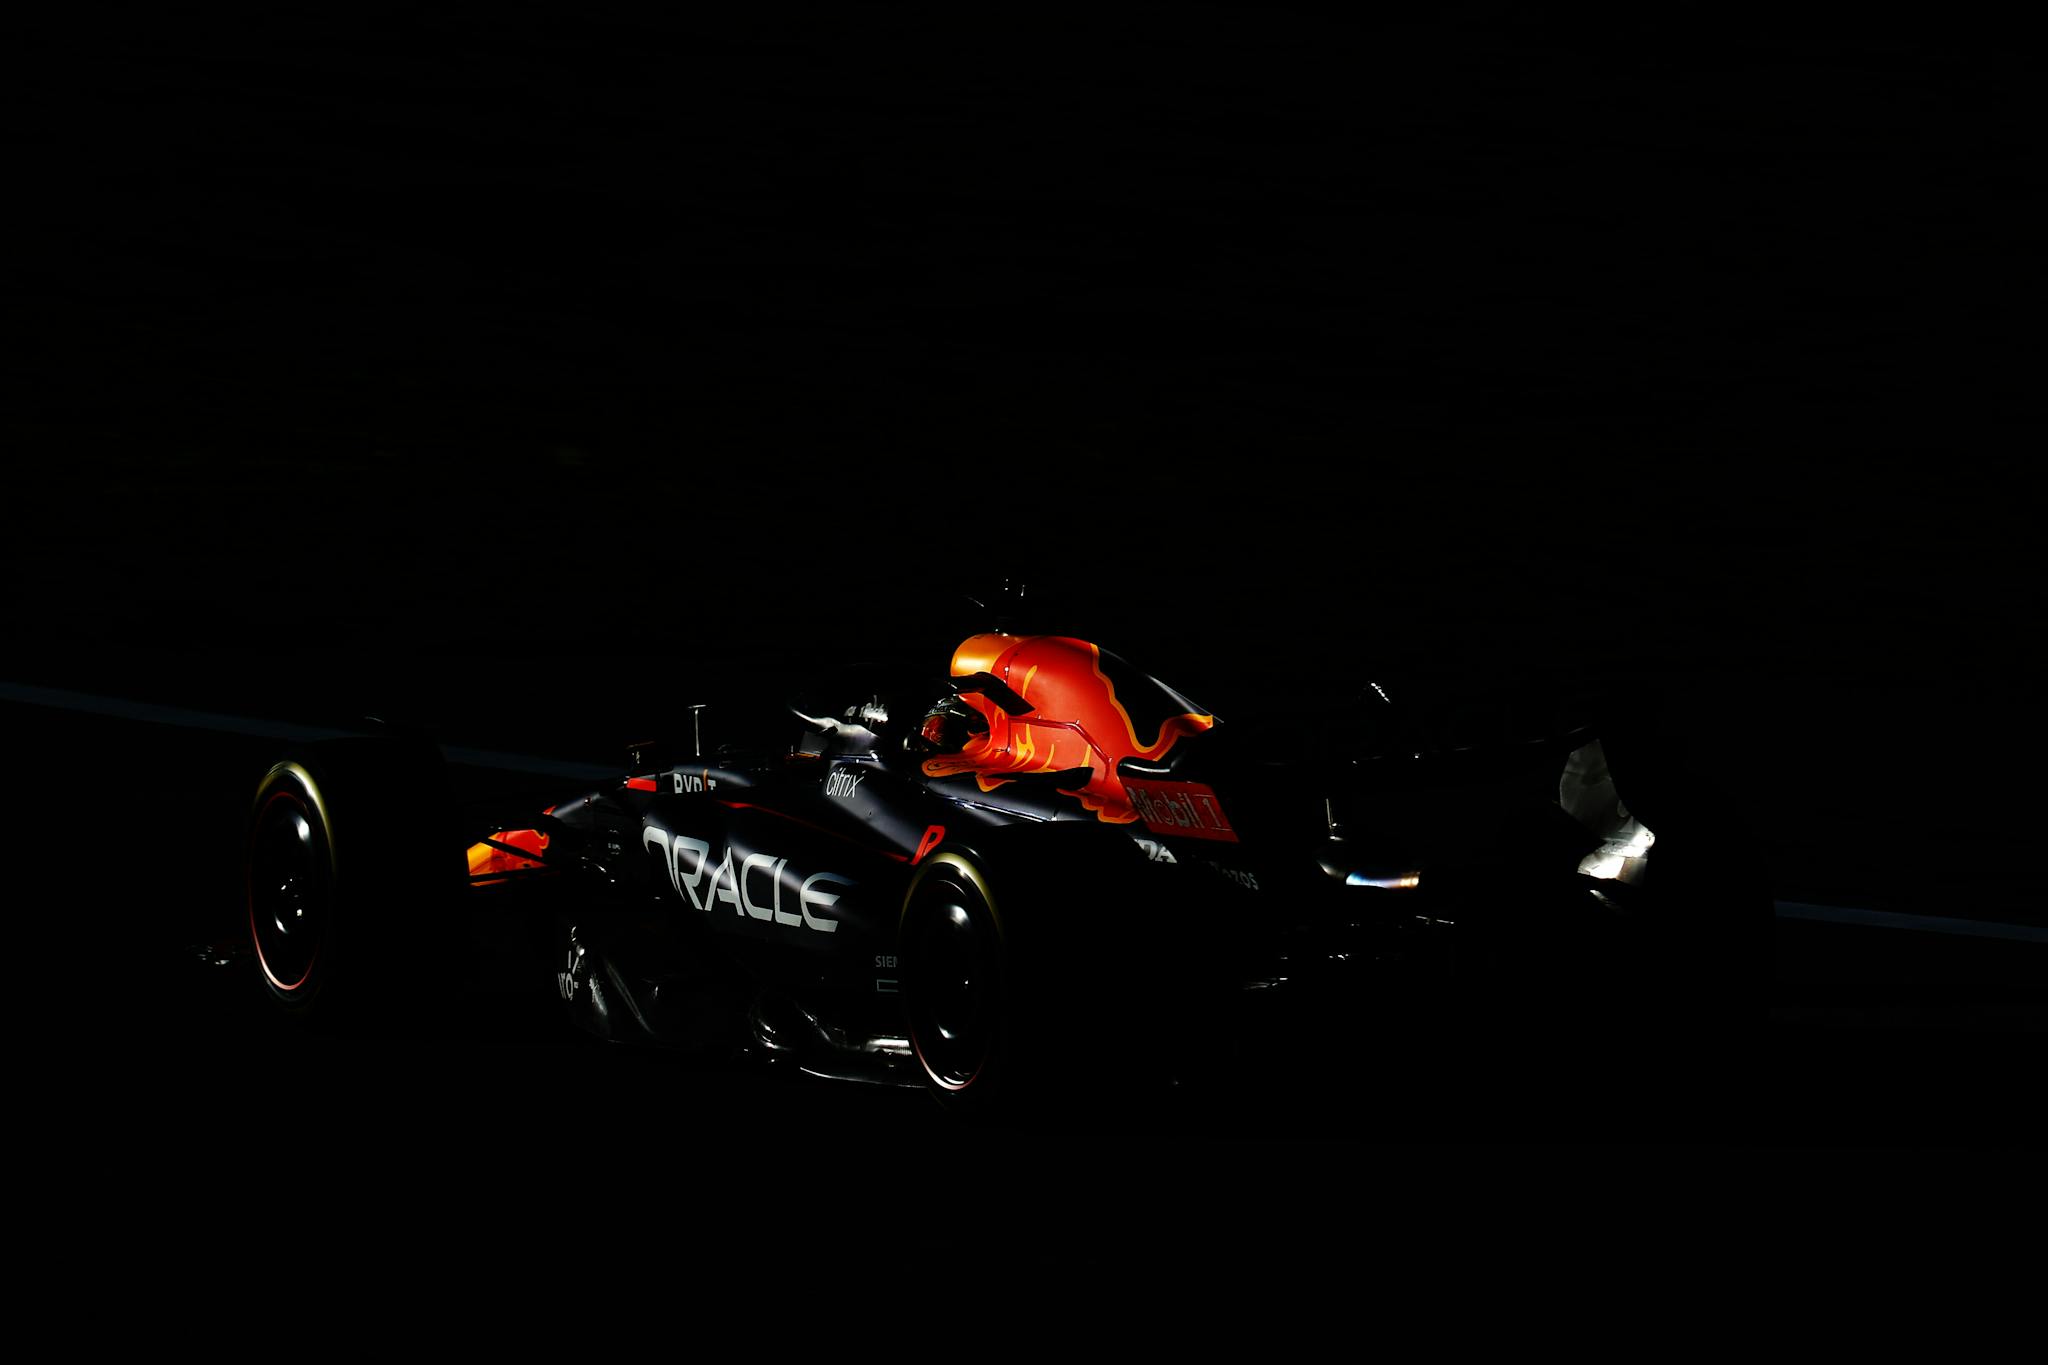 Bolid Verstappena zgasł w Q3. Perez dostał priorytet na kwalifikacje